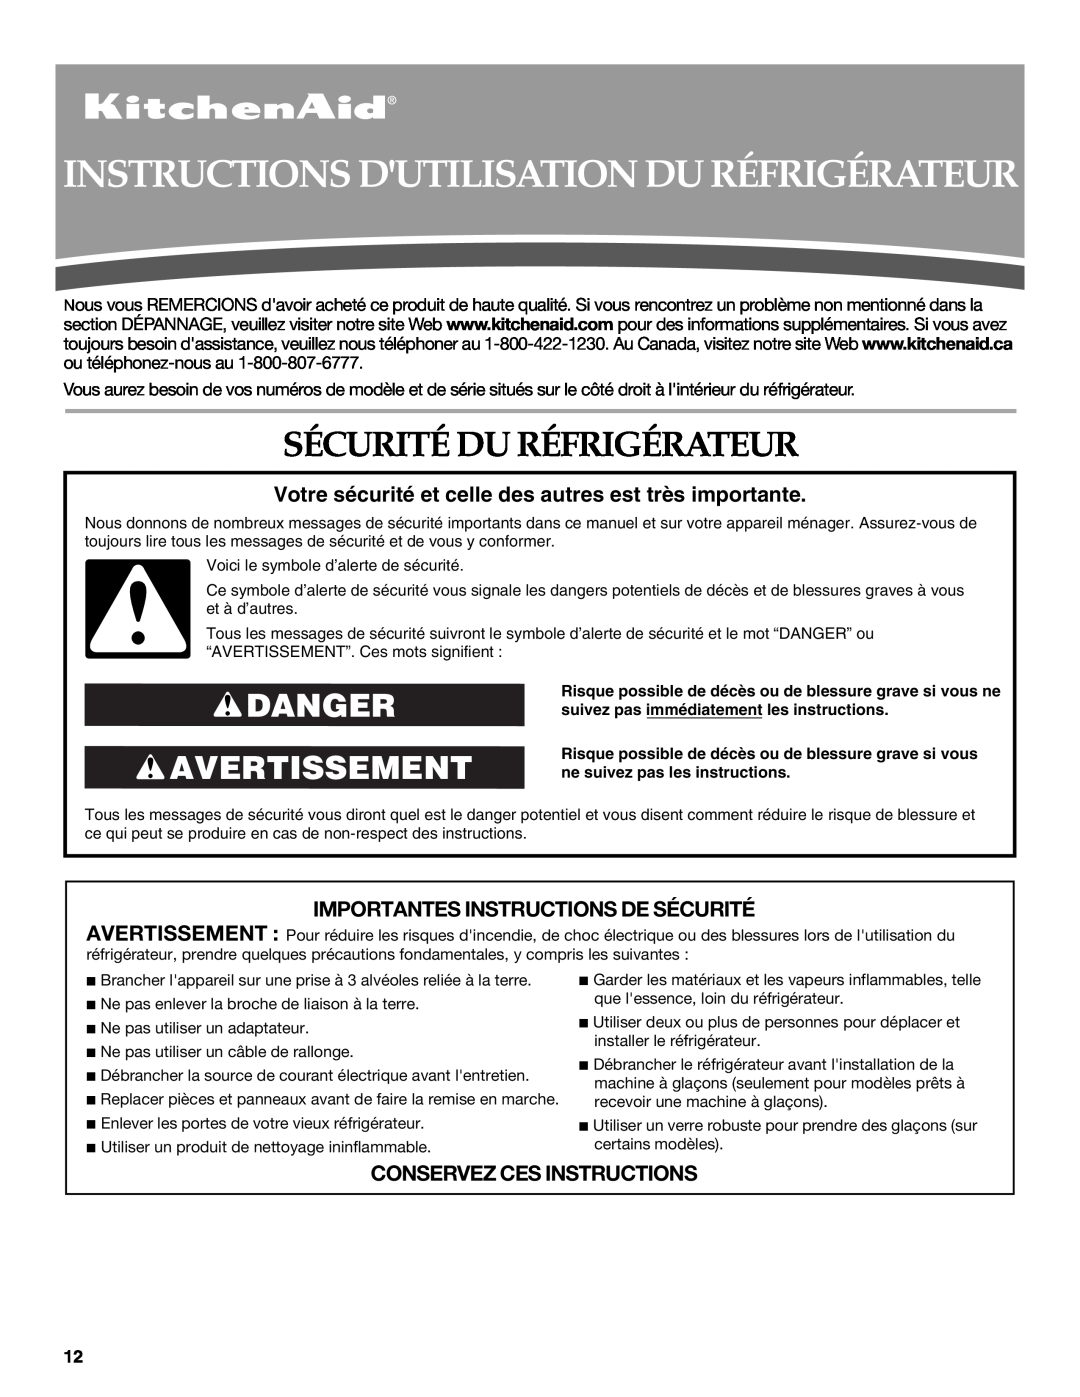 KitchenAid W10162434A warranty Instructions Dutilisation Du Réfrigérateur, Sécurité Du Réfrigérateur, Danger Avertissement 